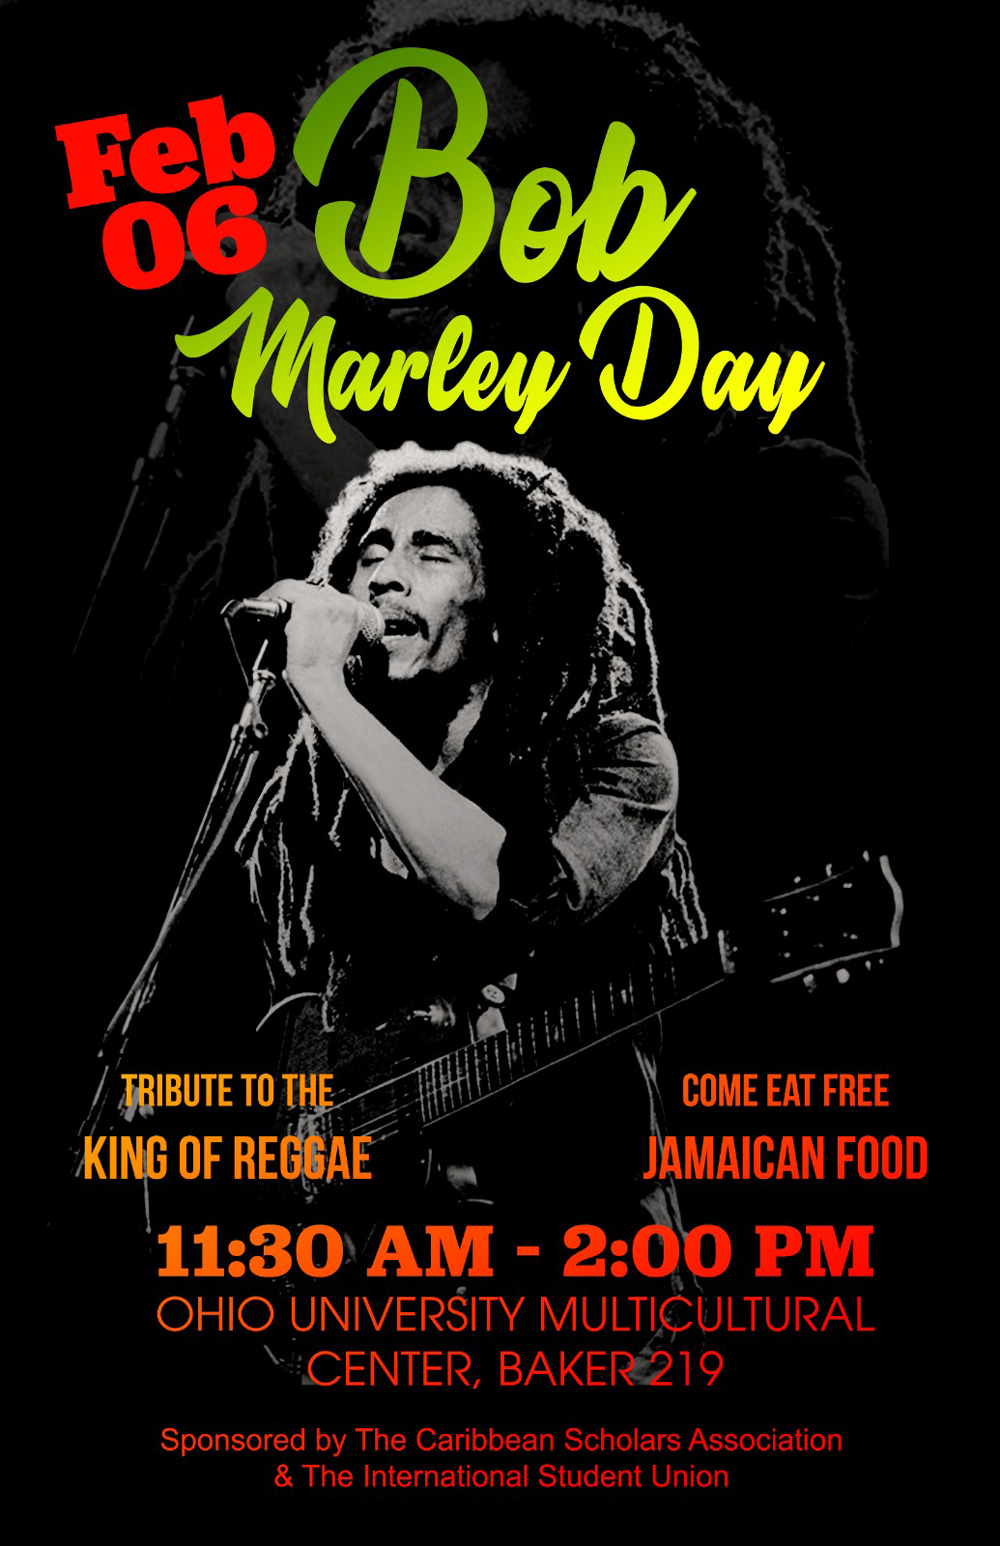 Bob Marley Day celebration is Feb. 6